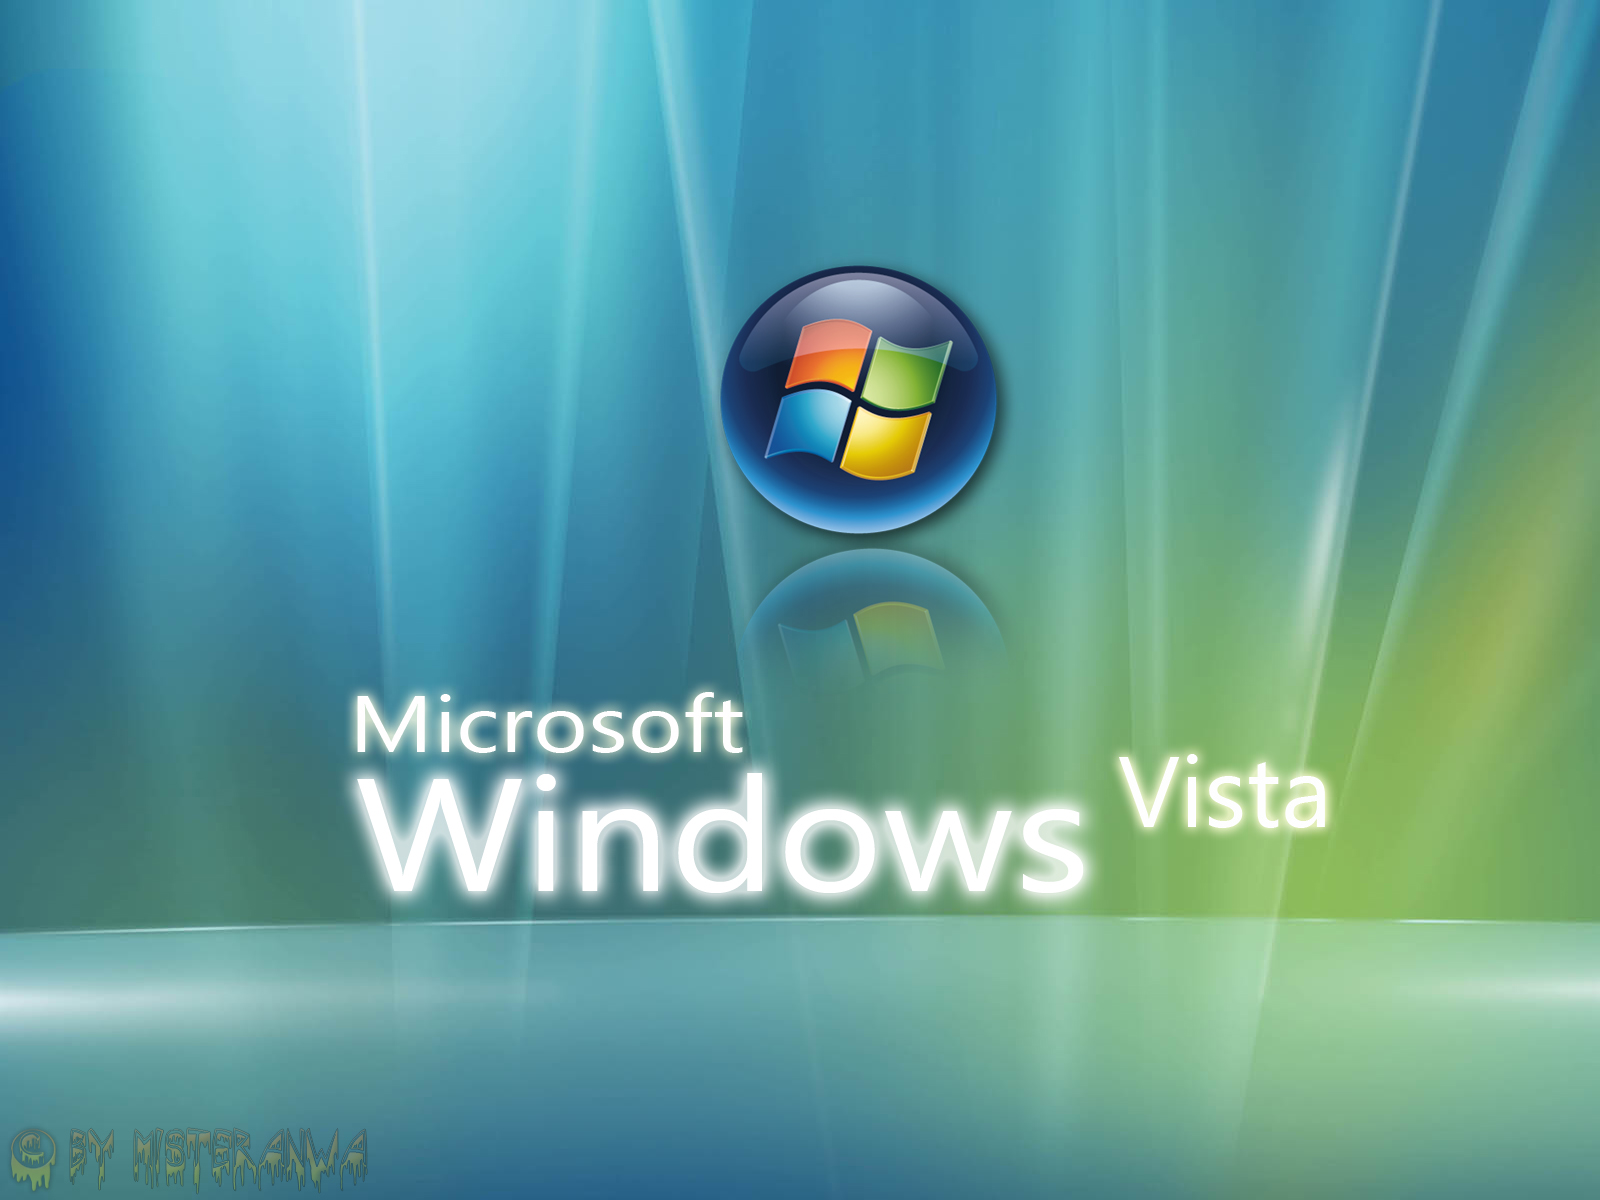 Windows Vista Wallpapers Pack 2 Cute Girls Celebrity Wallpaper